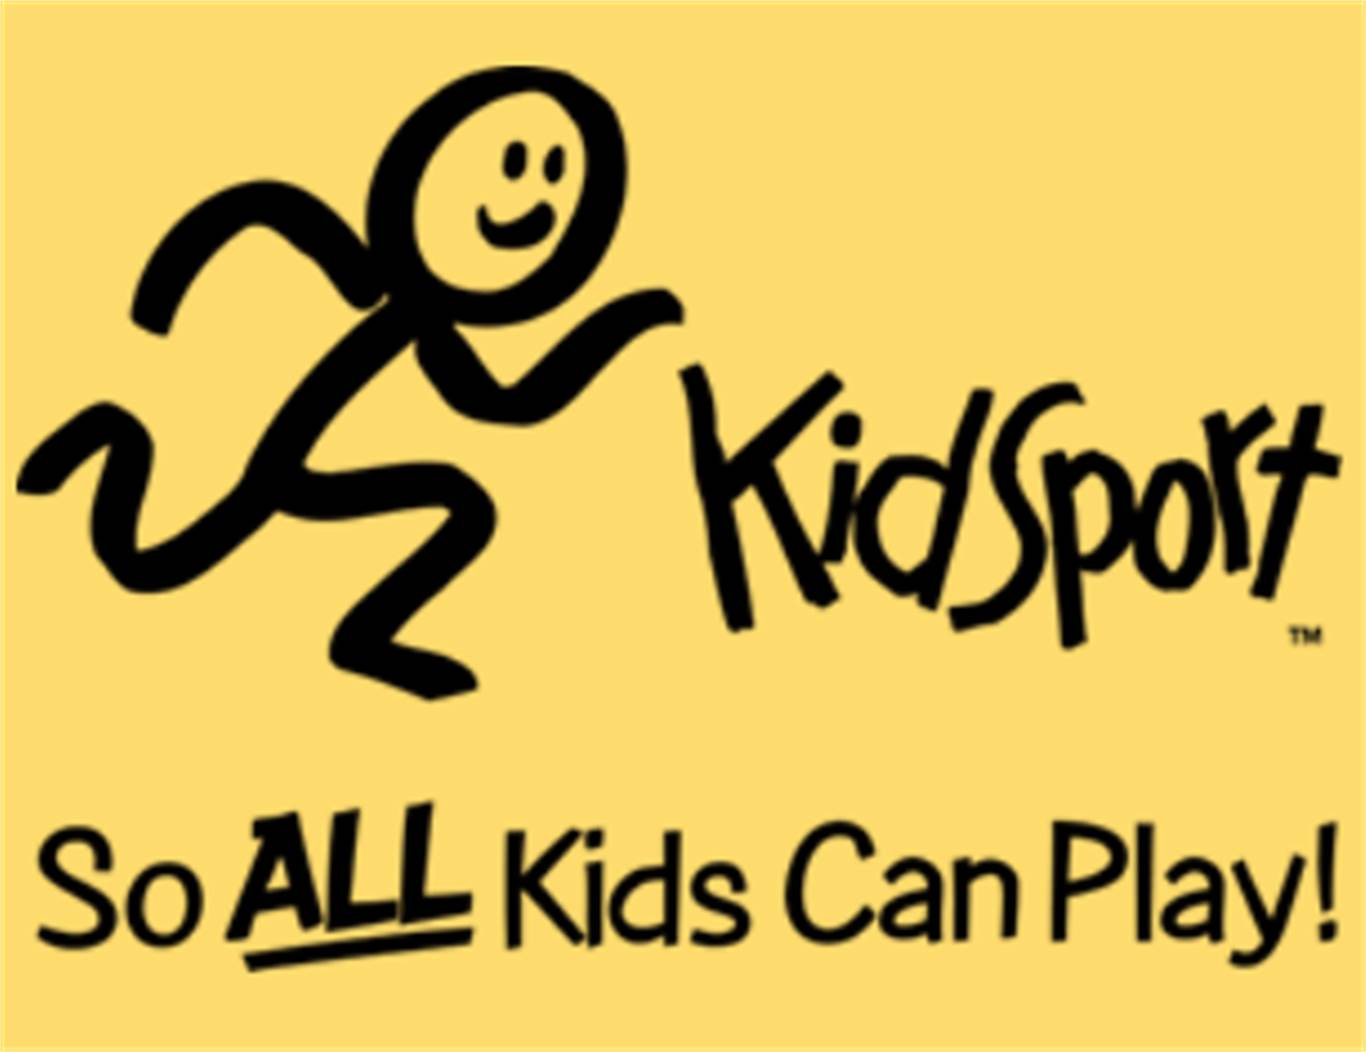 KidSport Grant